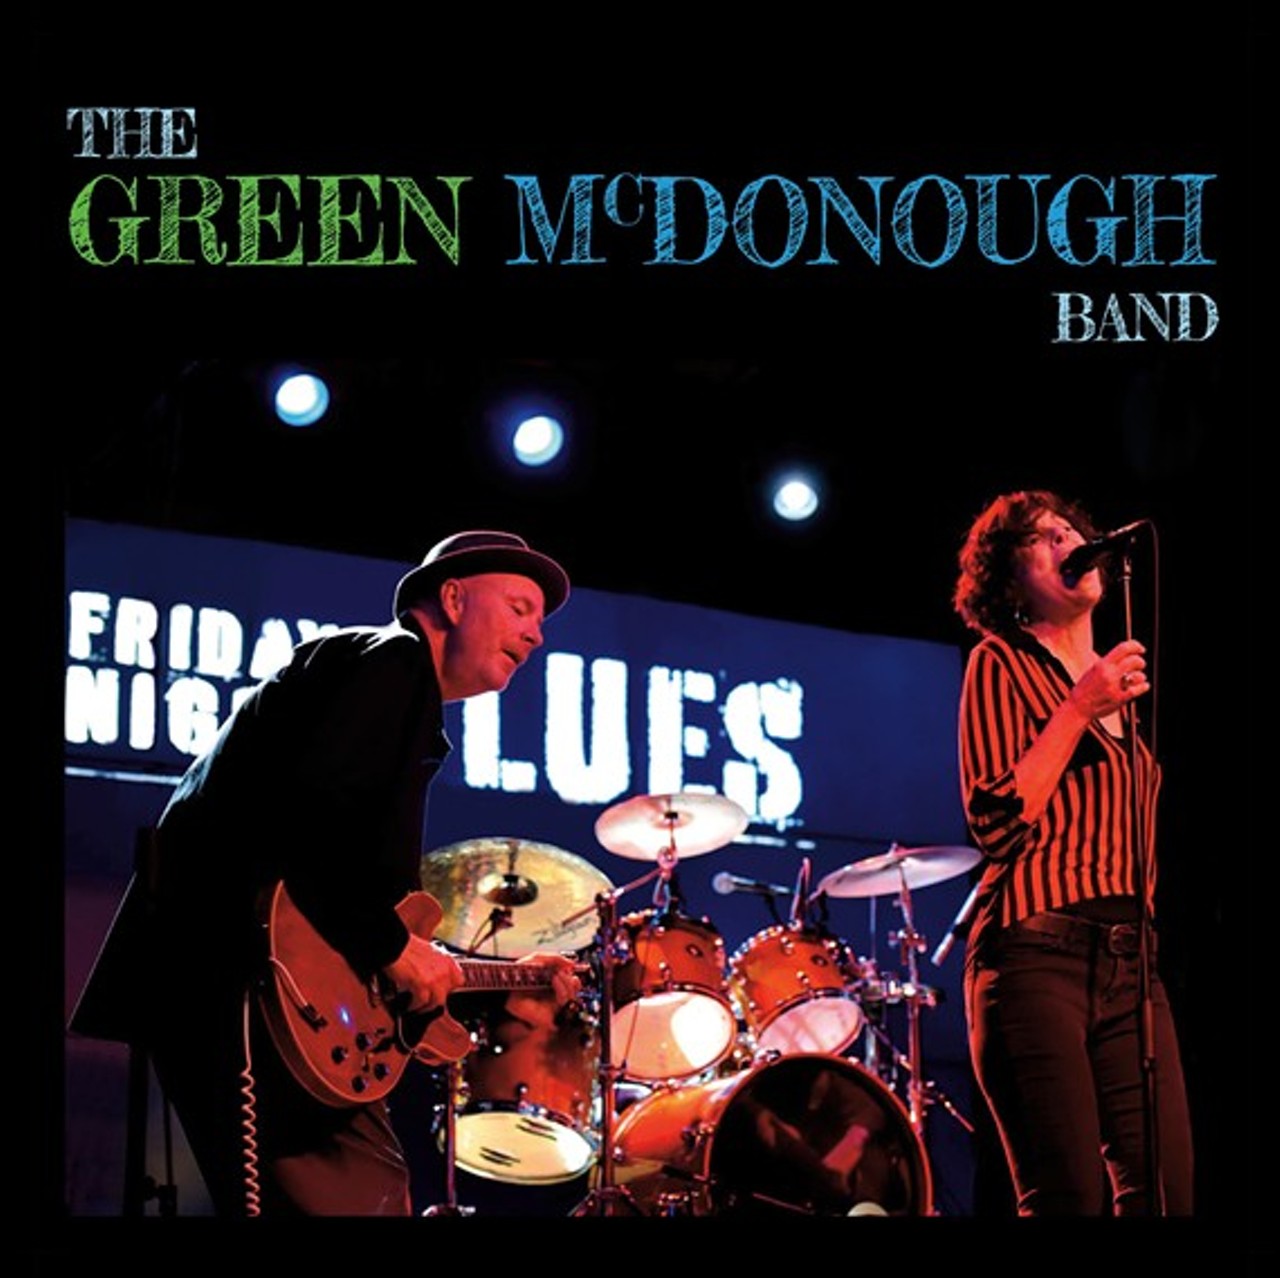 The Green McDonough Band | "the green mcdonough band"